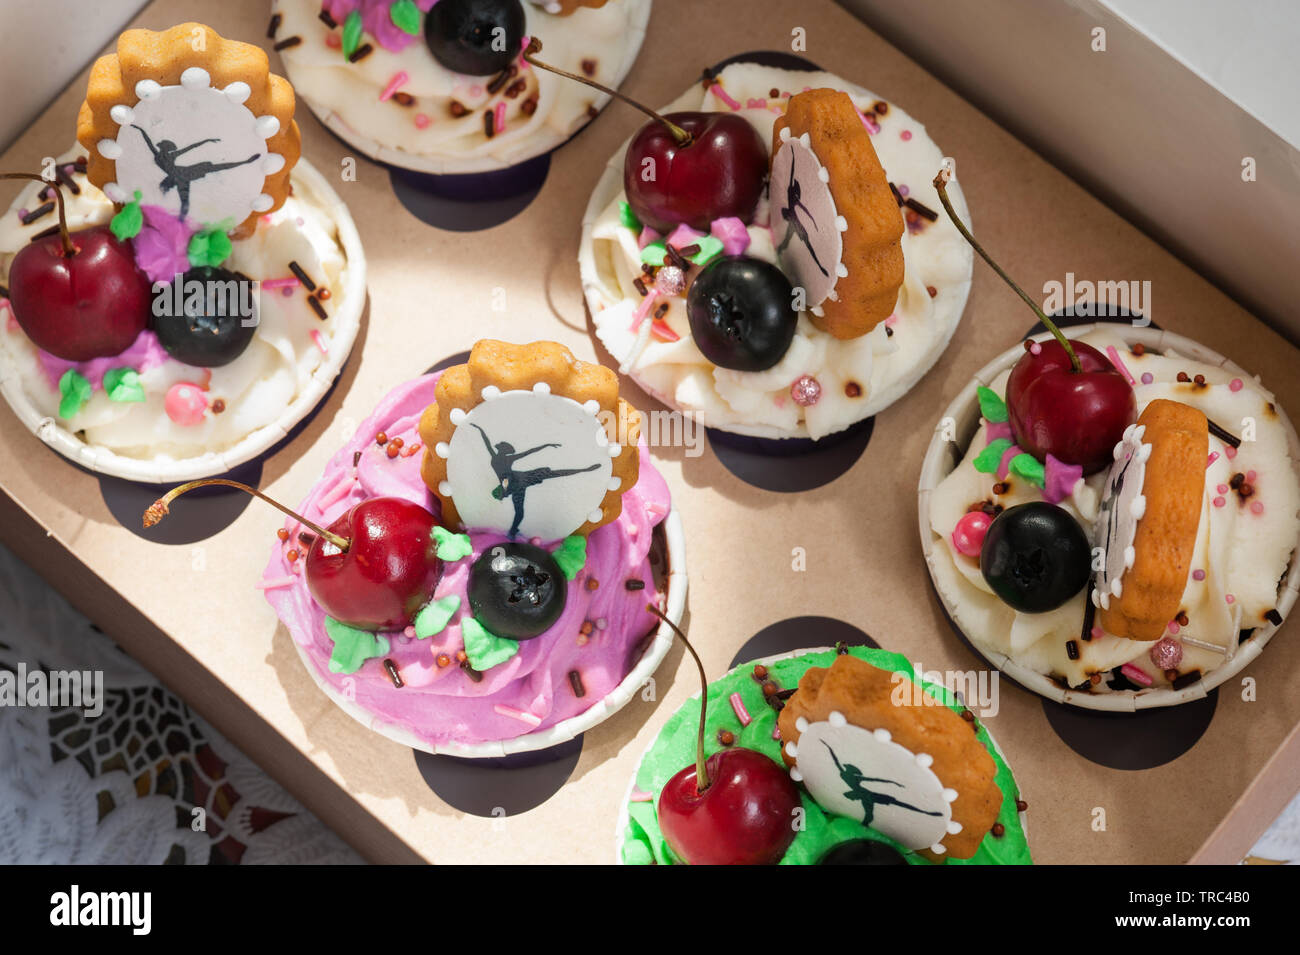 Cupcakes con bayas y gingerbread decorativos Foto de stock